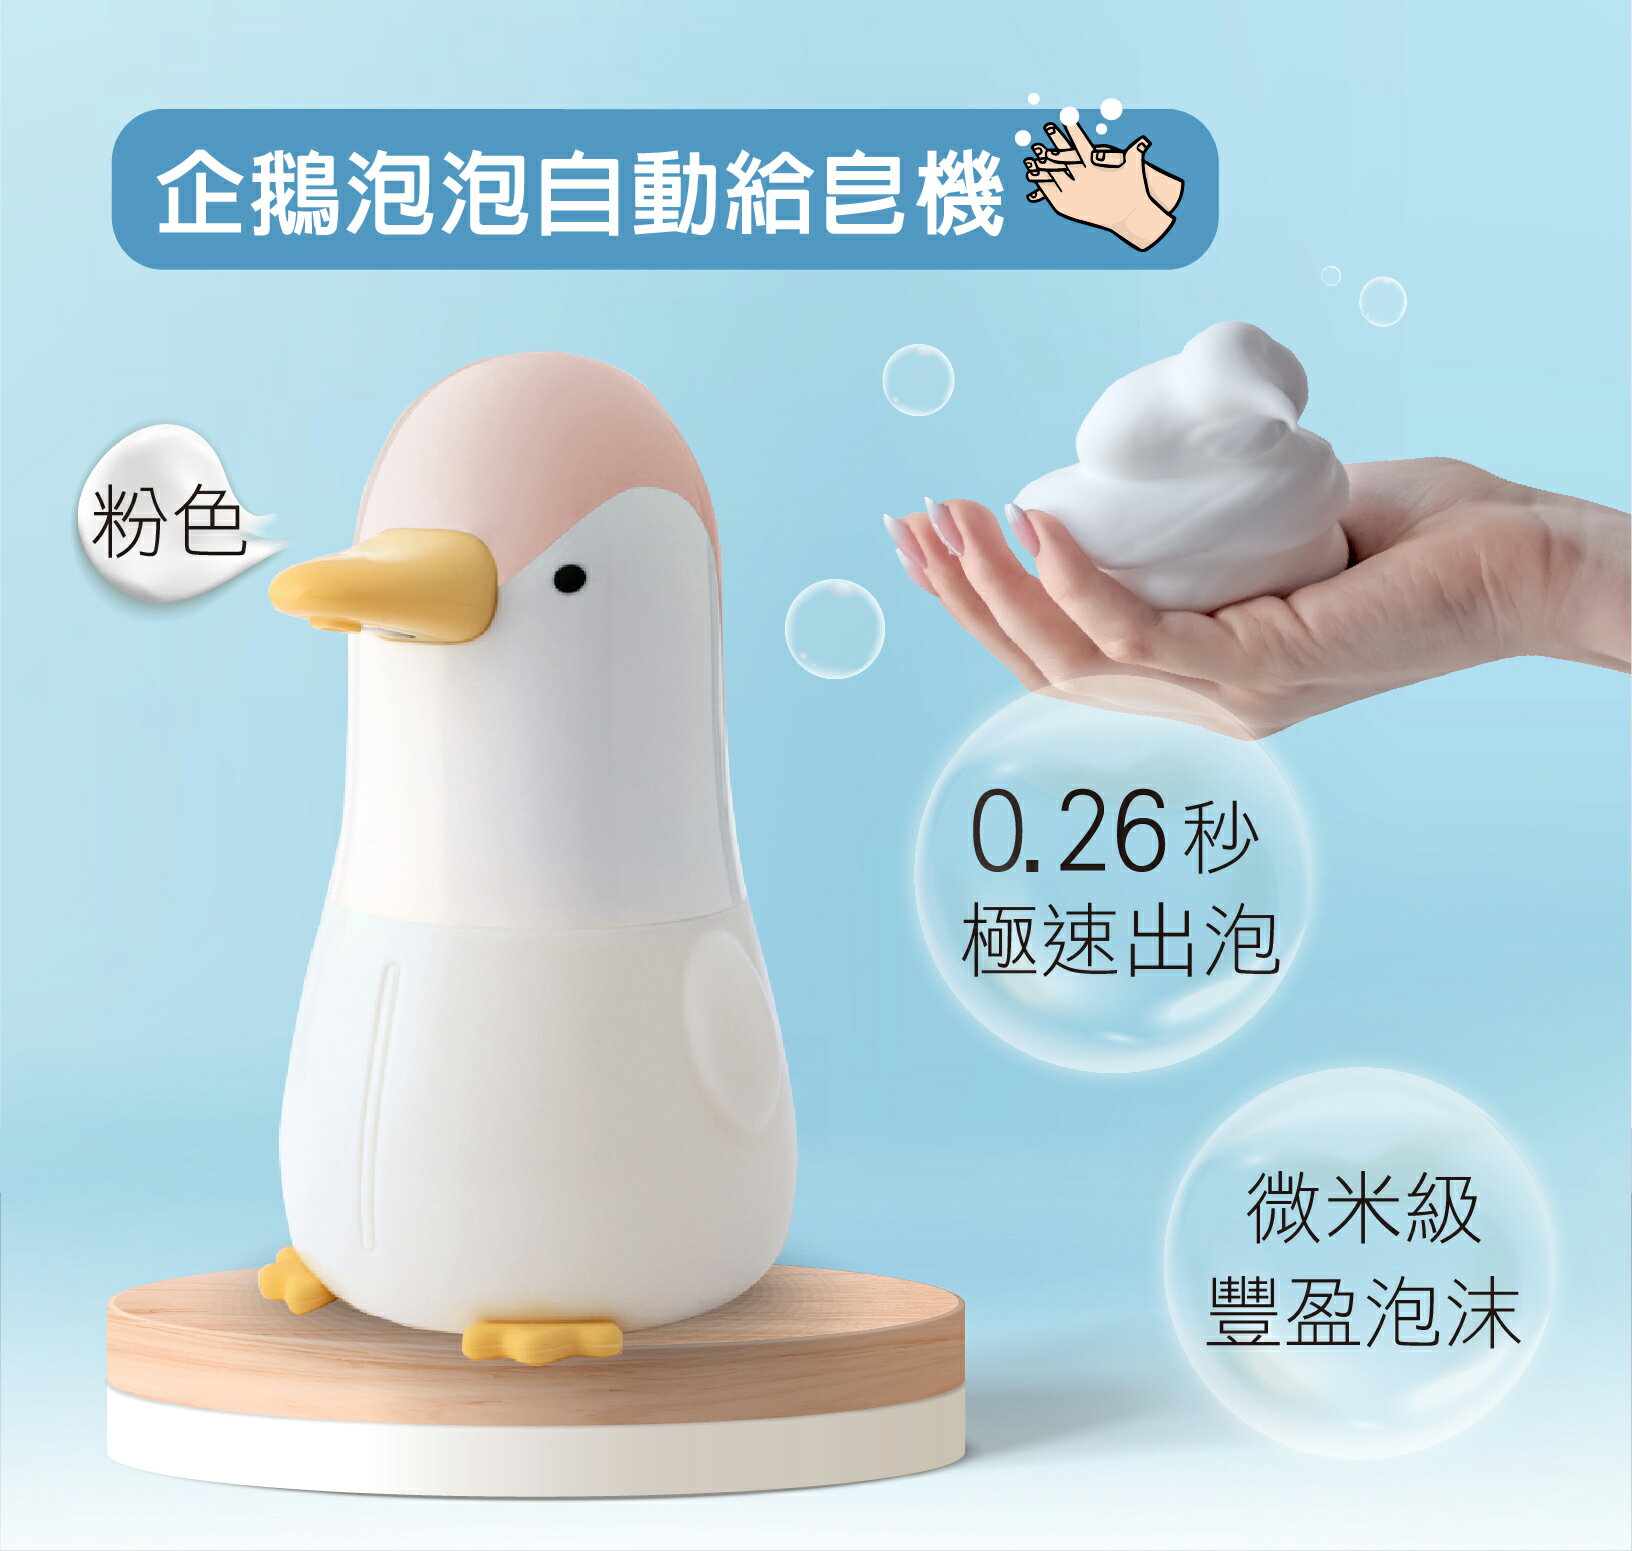 企鵝泡泡自動給皂機 洗手機 紅外線感應 泡沫洗手機